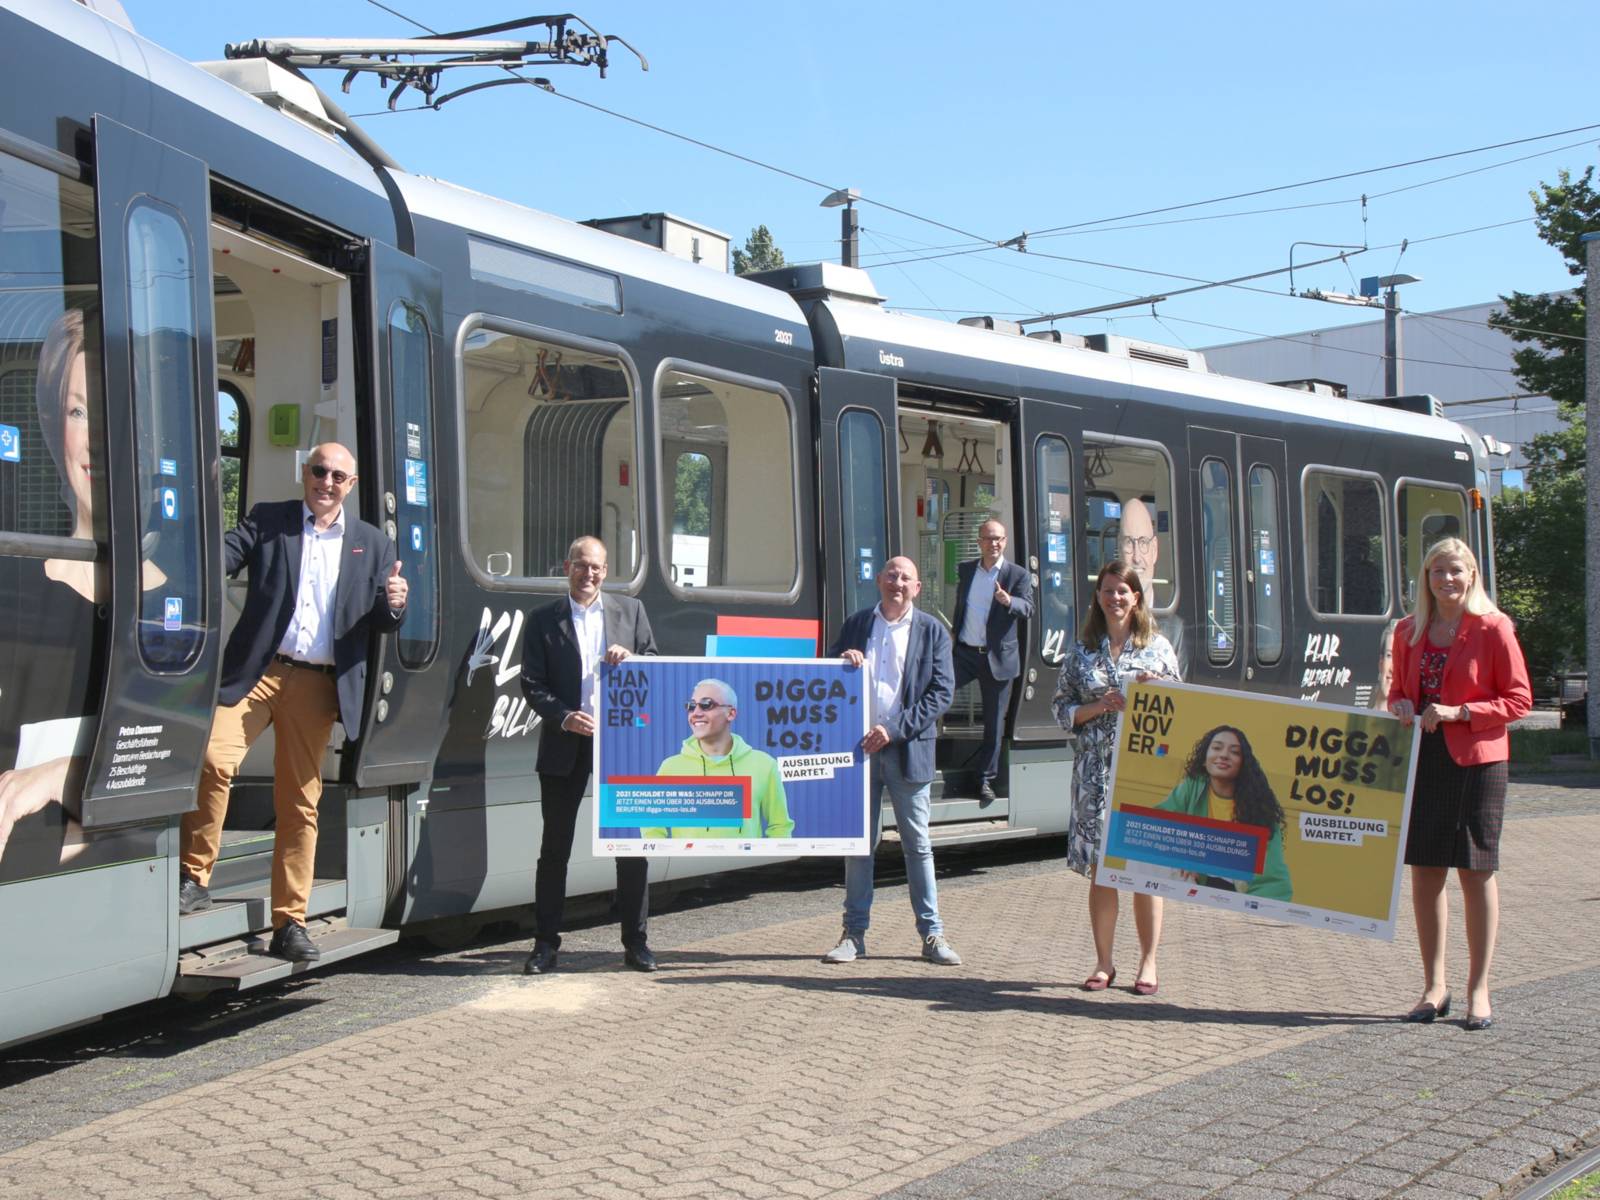 Zwei Frauen und vier Männer haben sich an einem Stadtbahnzug postiert. Es werden zwei Plakate gehalten und die Türen der Bahn sind geöffnet.